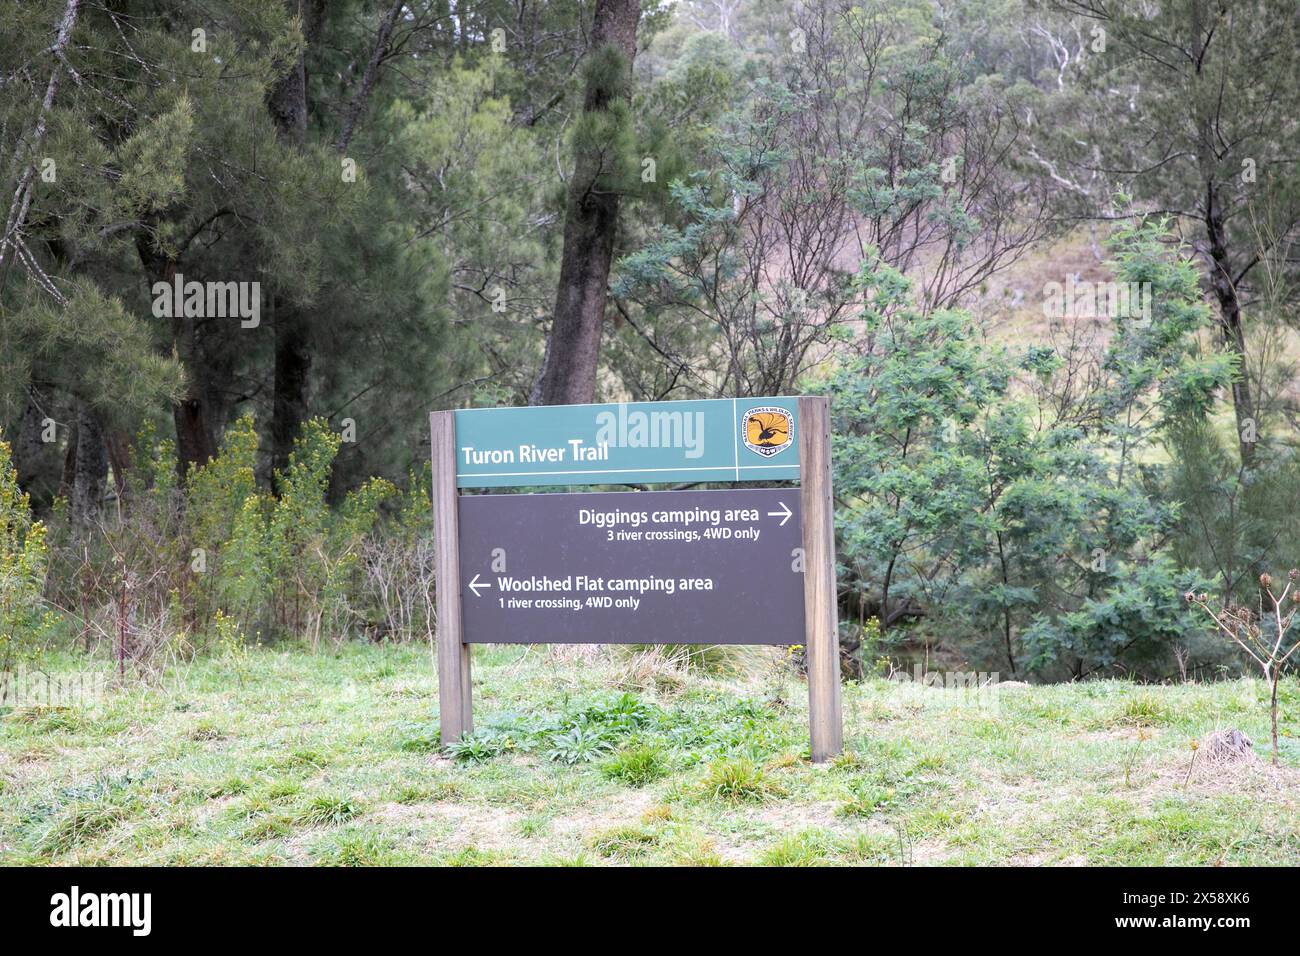 Turon National Park und der Turon River Trail mit Wegbeschreibungen zu Grabungen und Woolshed Campingplätzen durch Flussüberquerungen, New South Wales, Australi Stockfoto